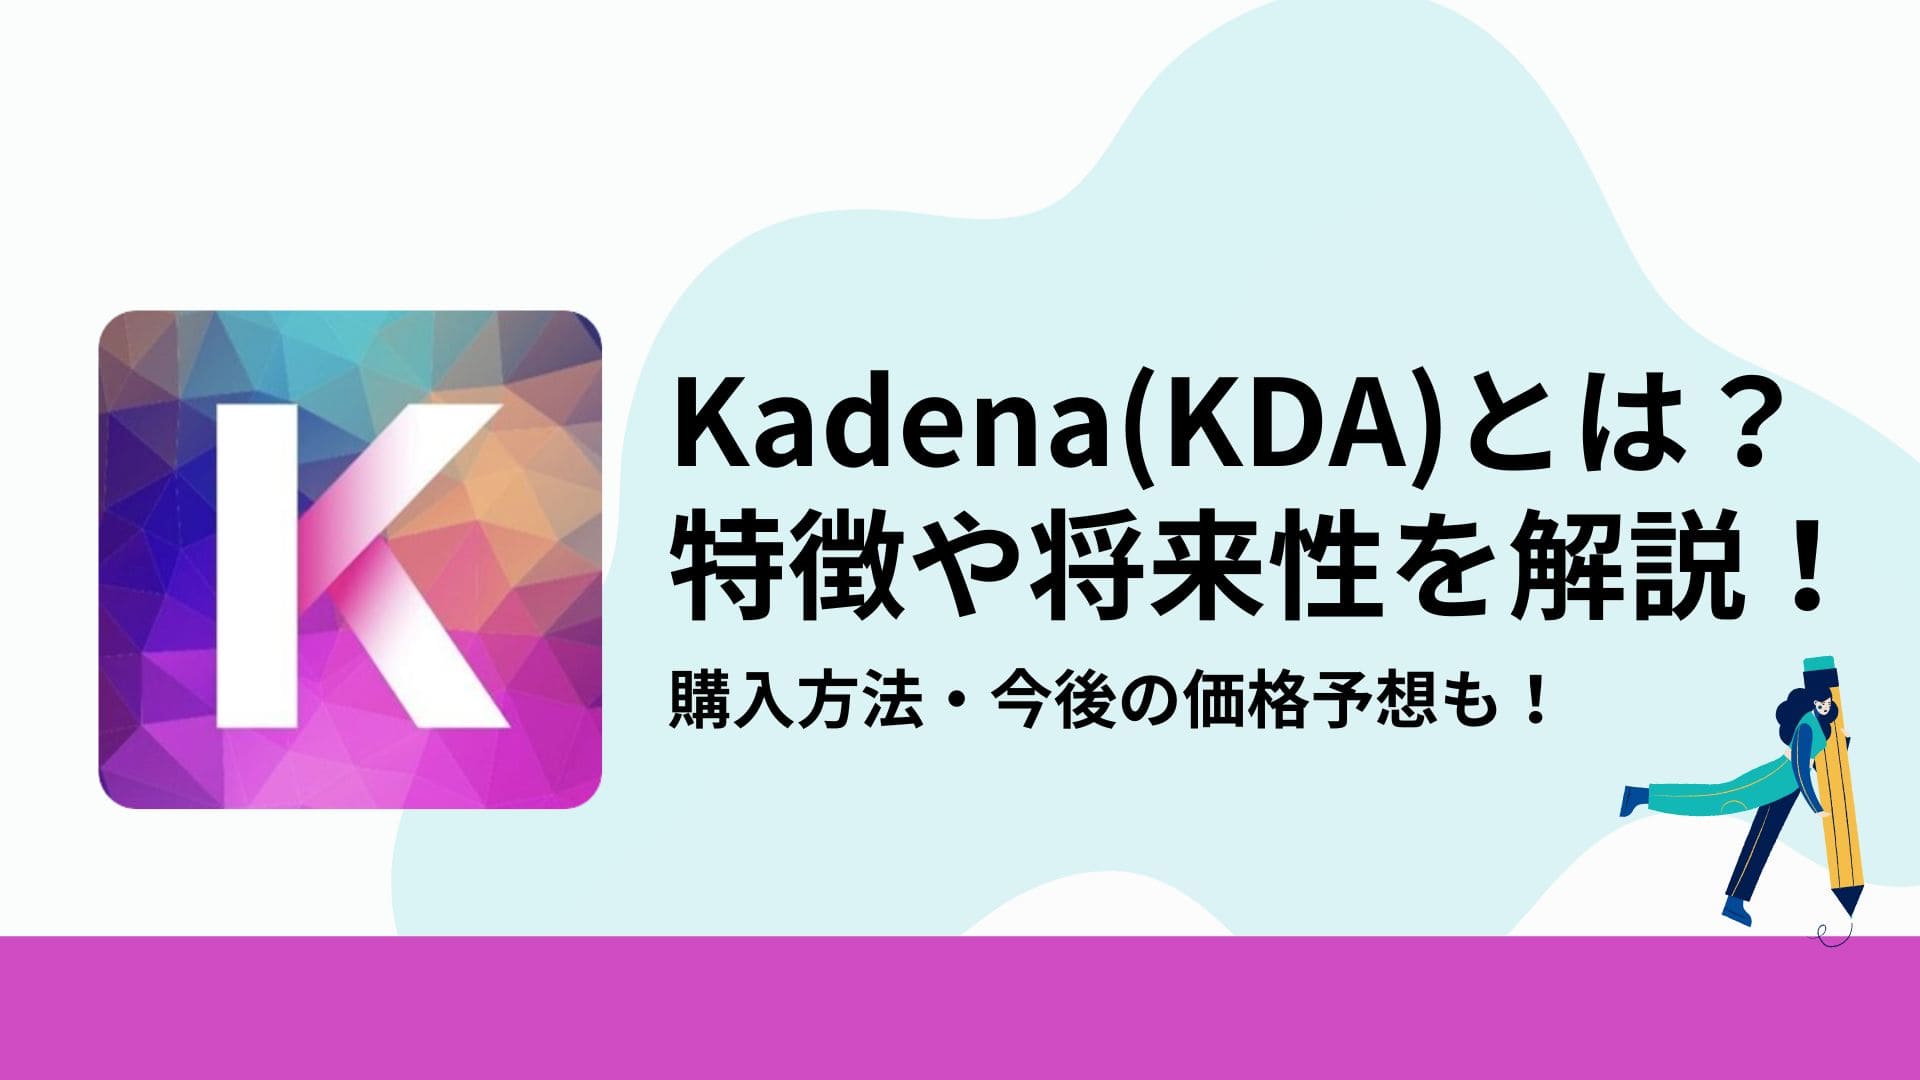 Kadena(KDA)_アイキャッチ